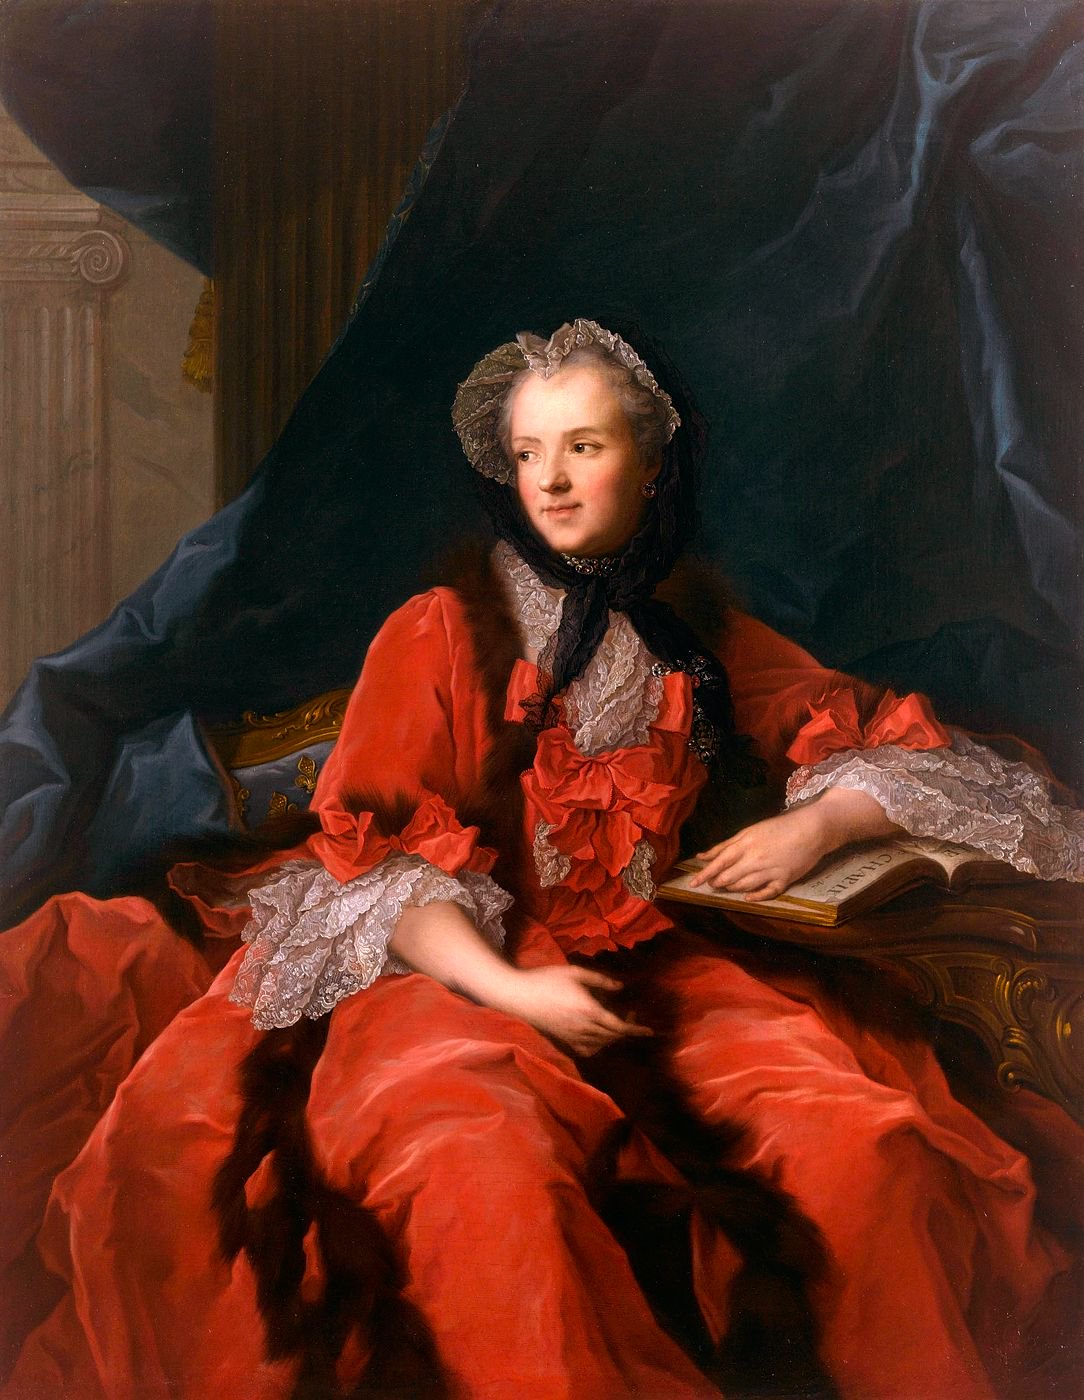 Représentation de la reine Marie Leszczynska en robe rouge, assise et tenant un livre